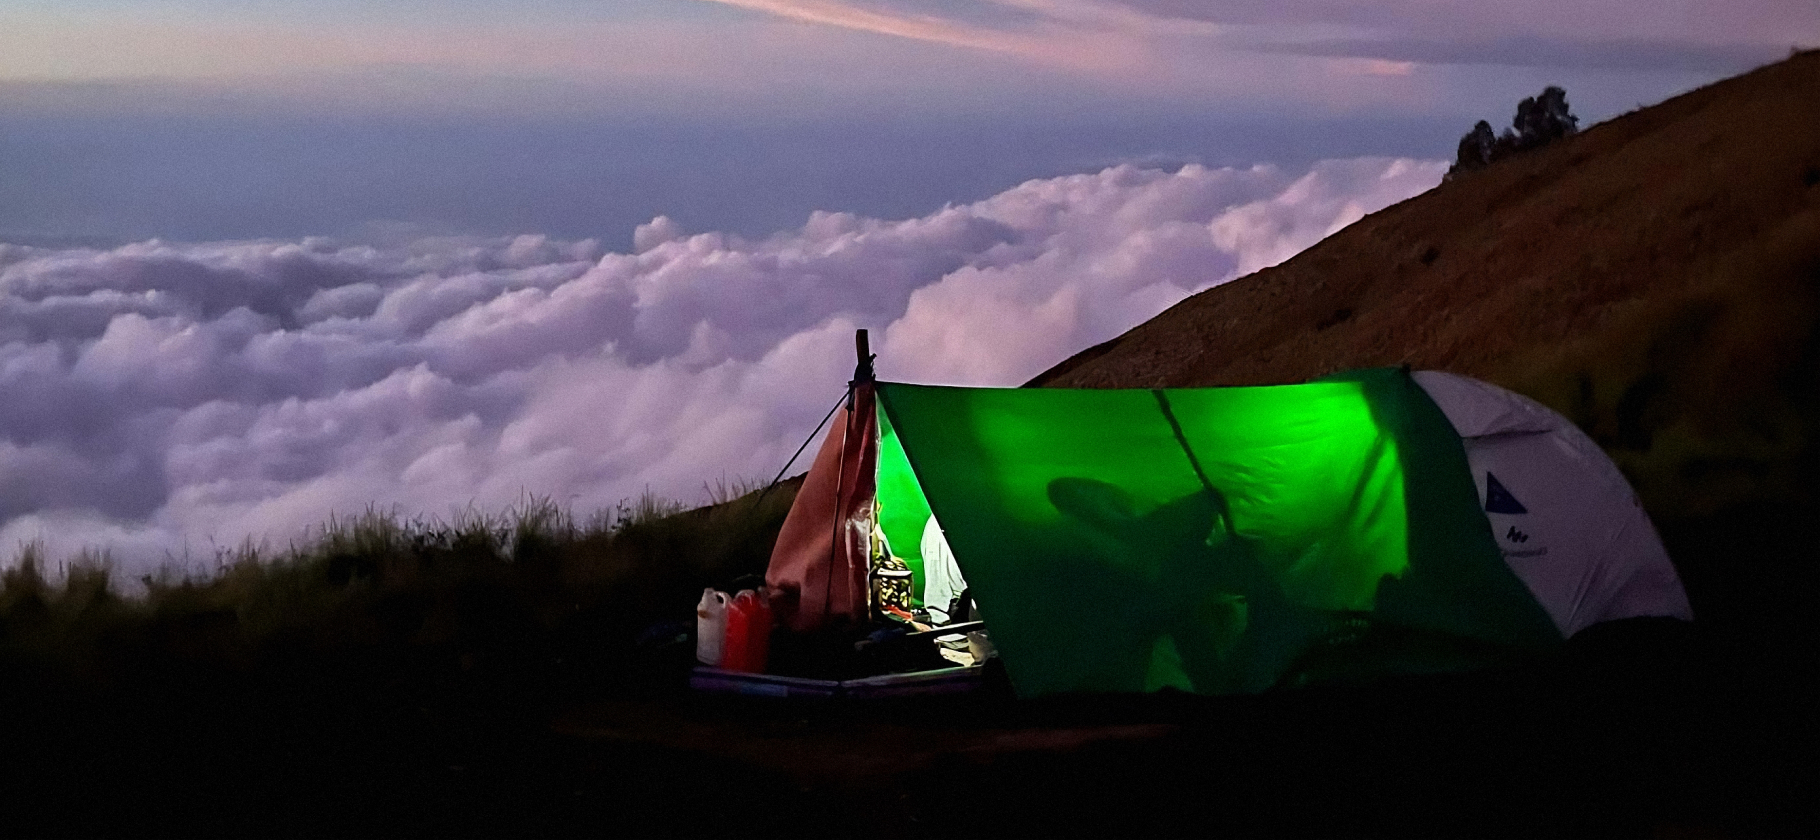 Фотоальбом: как мы поднялись на вулкан Ринджани в Индонезии